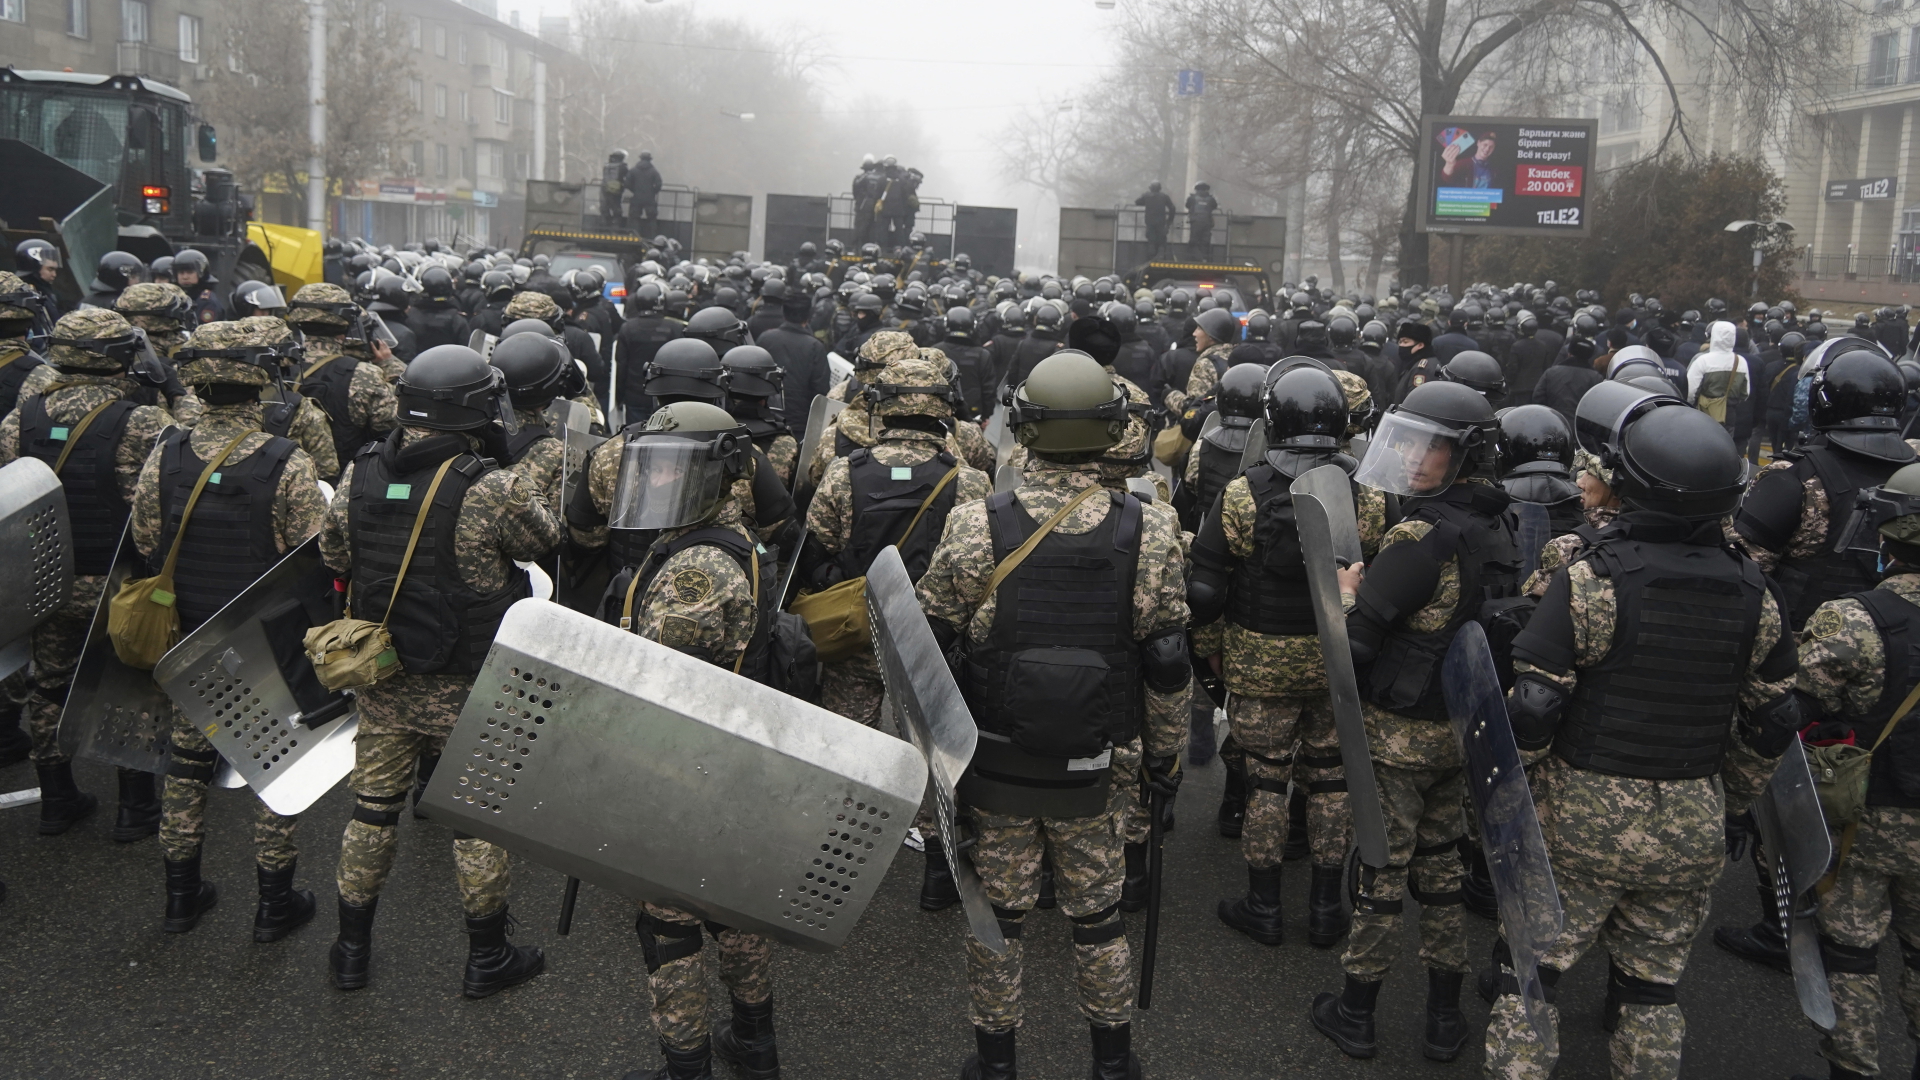 Bereitschaftspolizisten blockieren eine Straße im kasachischen Almaty, um Demonstranten aufzuhalten.